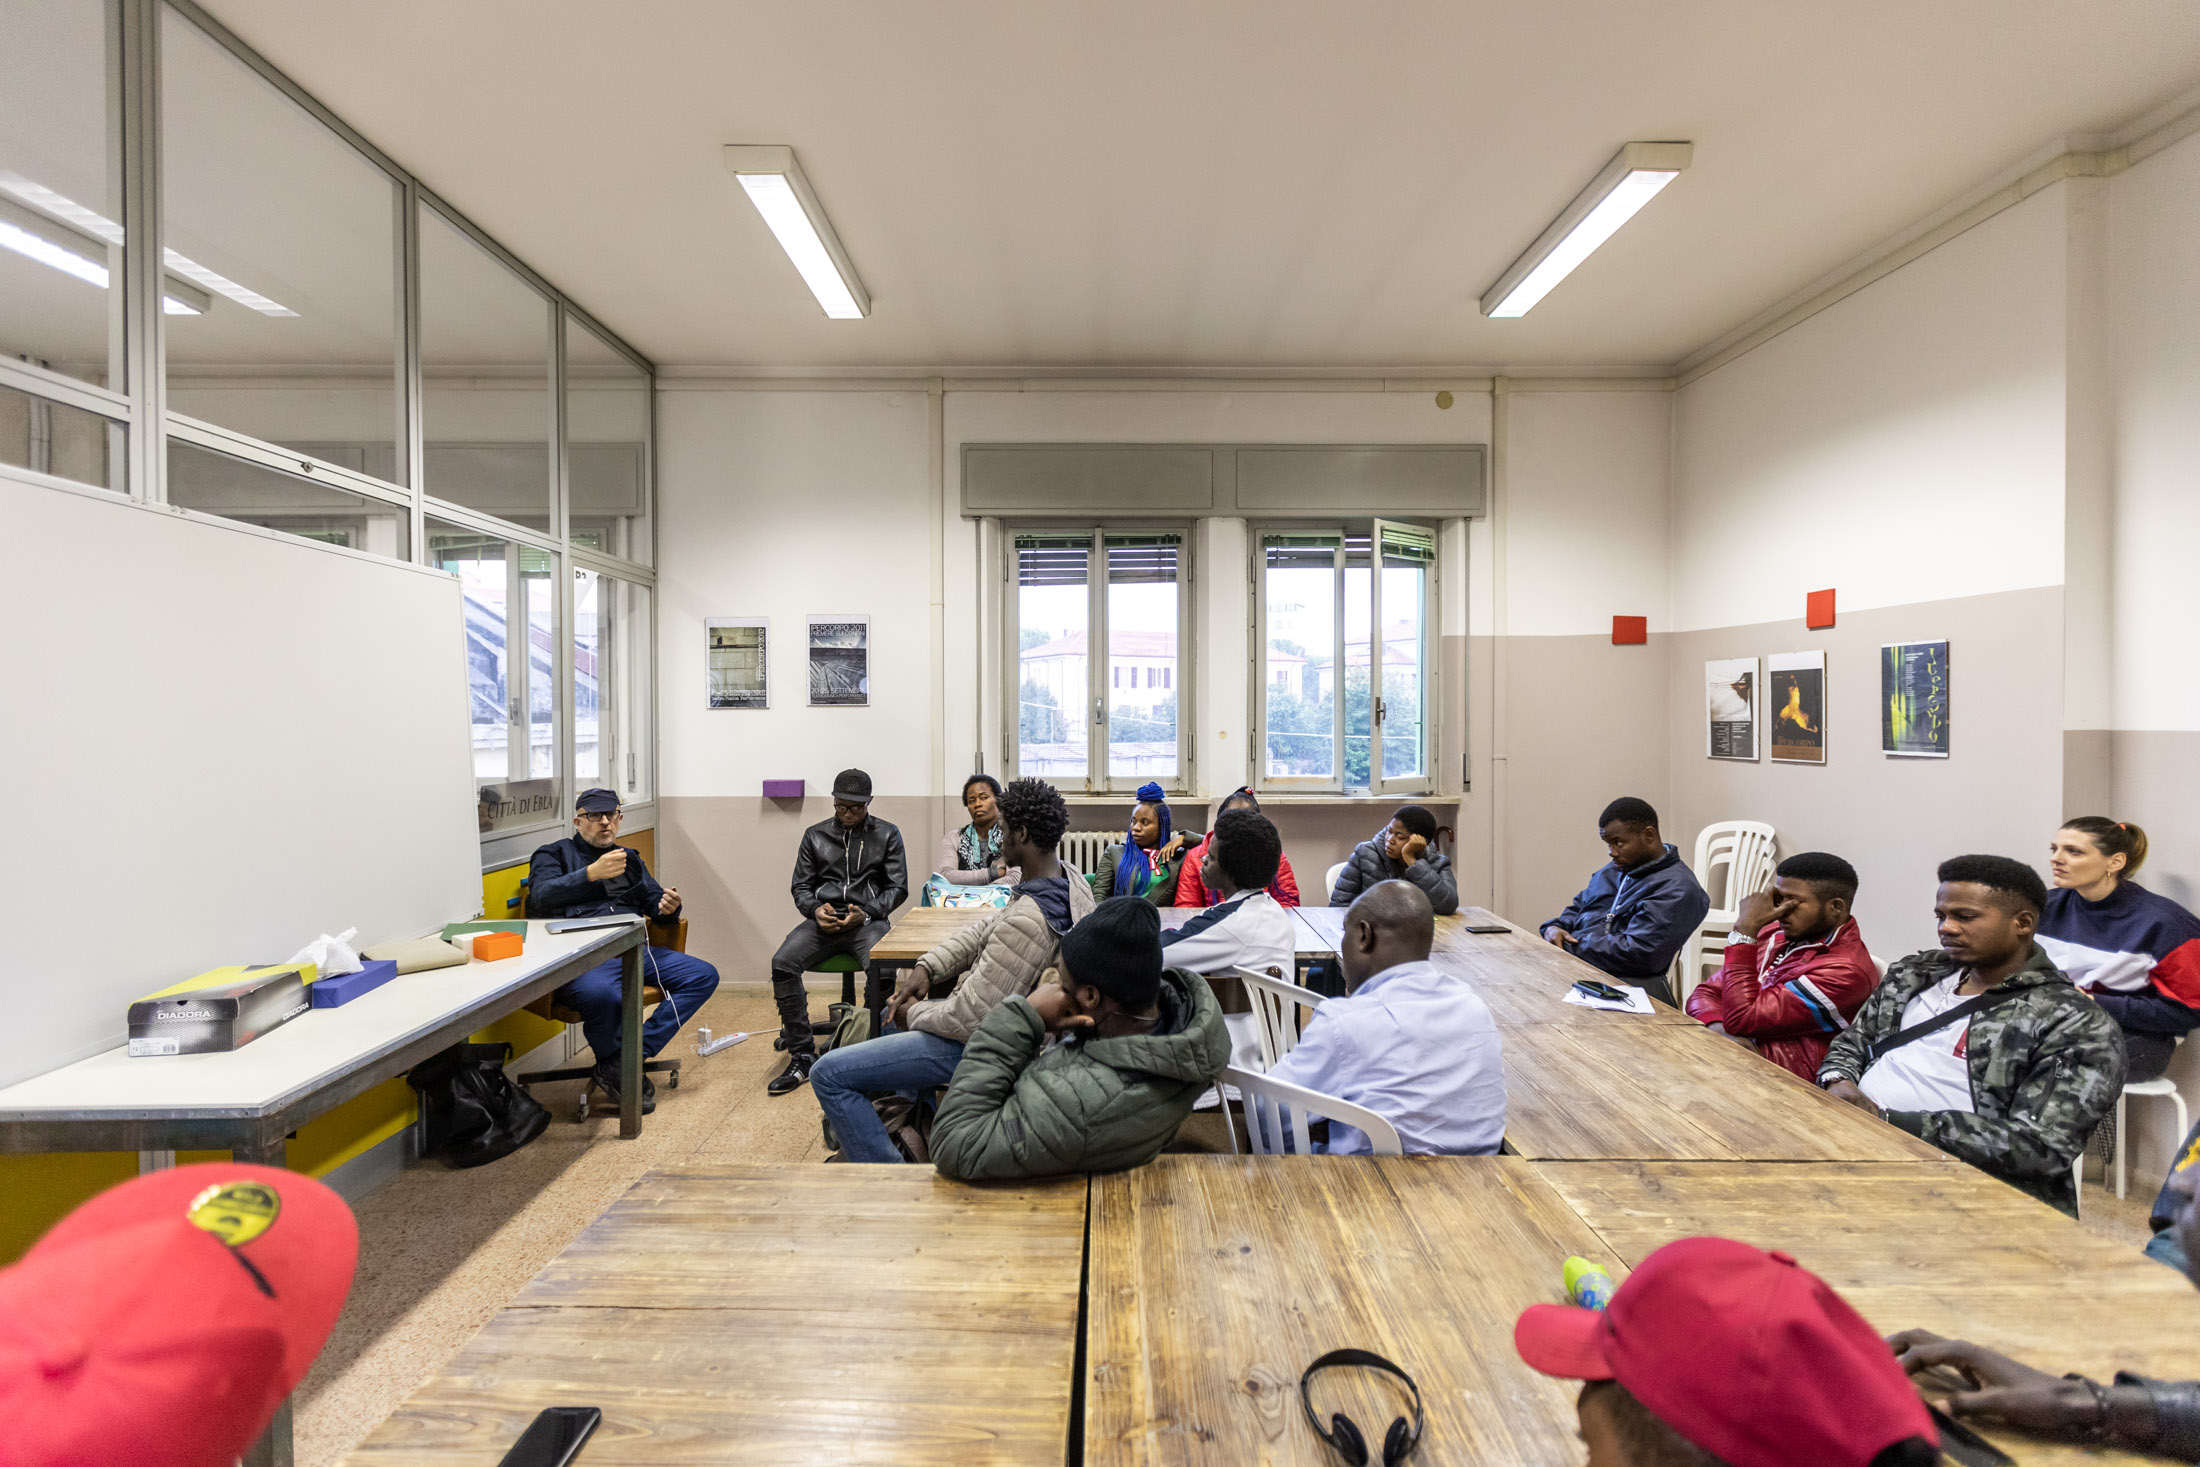 Flavio Favelli, Seminario di esercitazione artistica con migranti africani, Forlì. Foto di Gianluca Camporesi